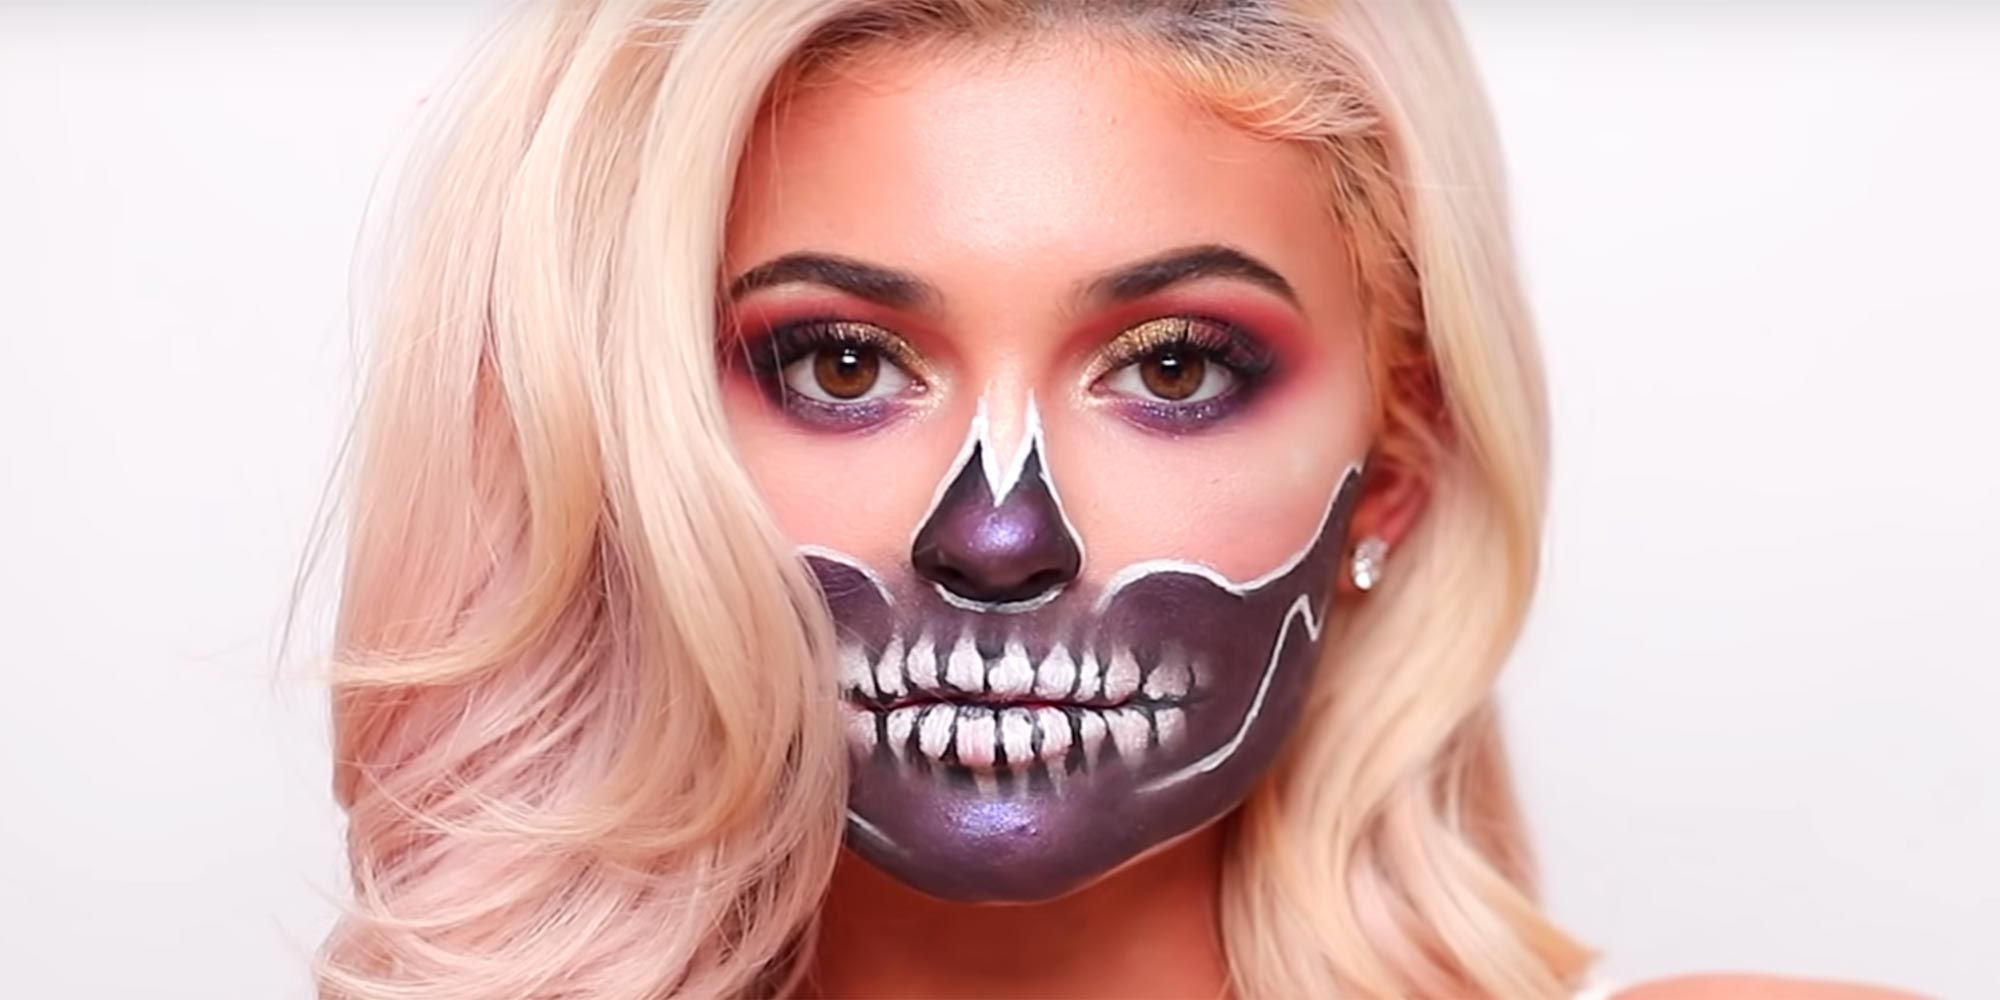 Kylie Jenner Skull Halloween Makeup Tutorial James Charles Skull